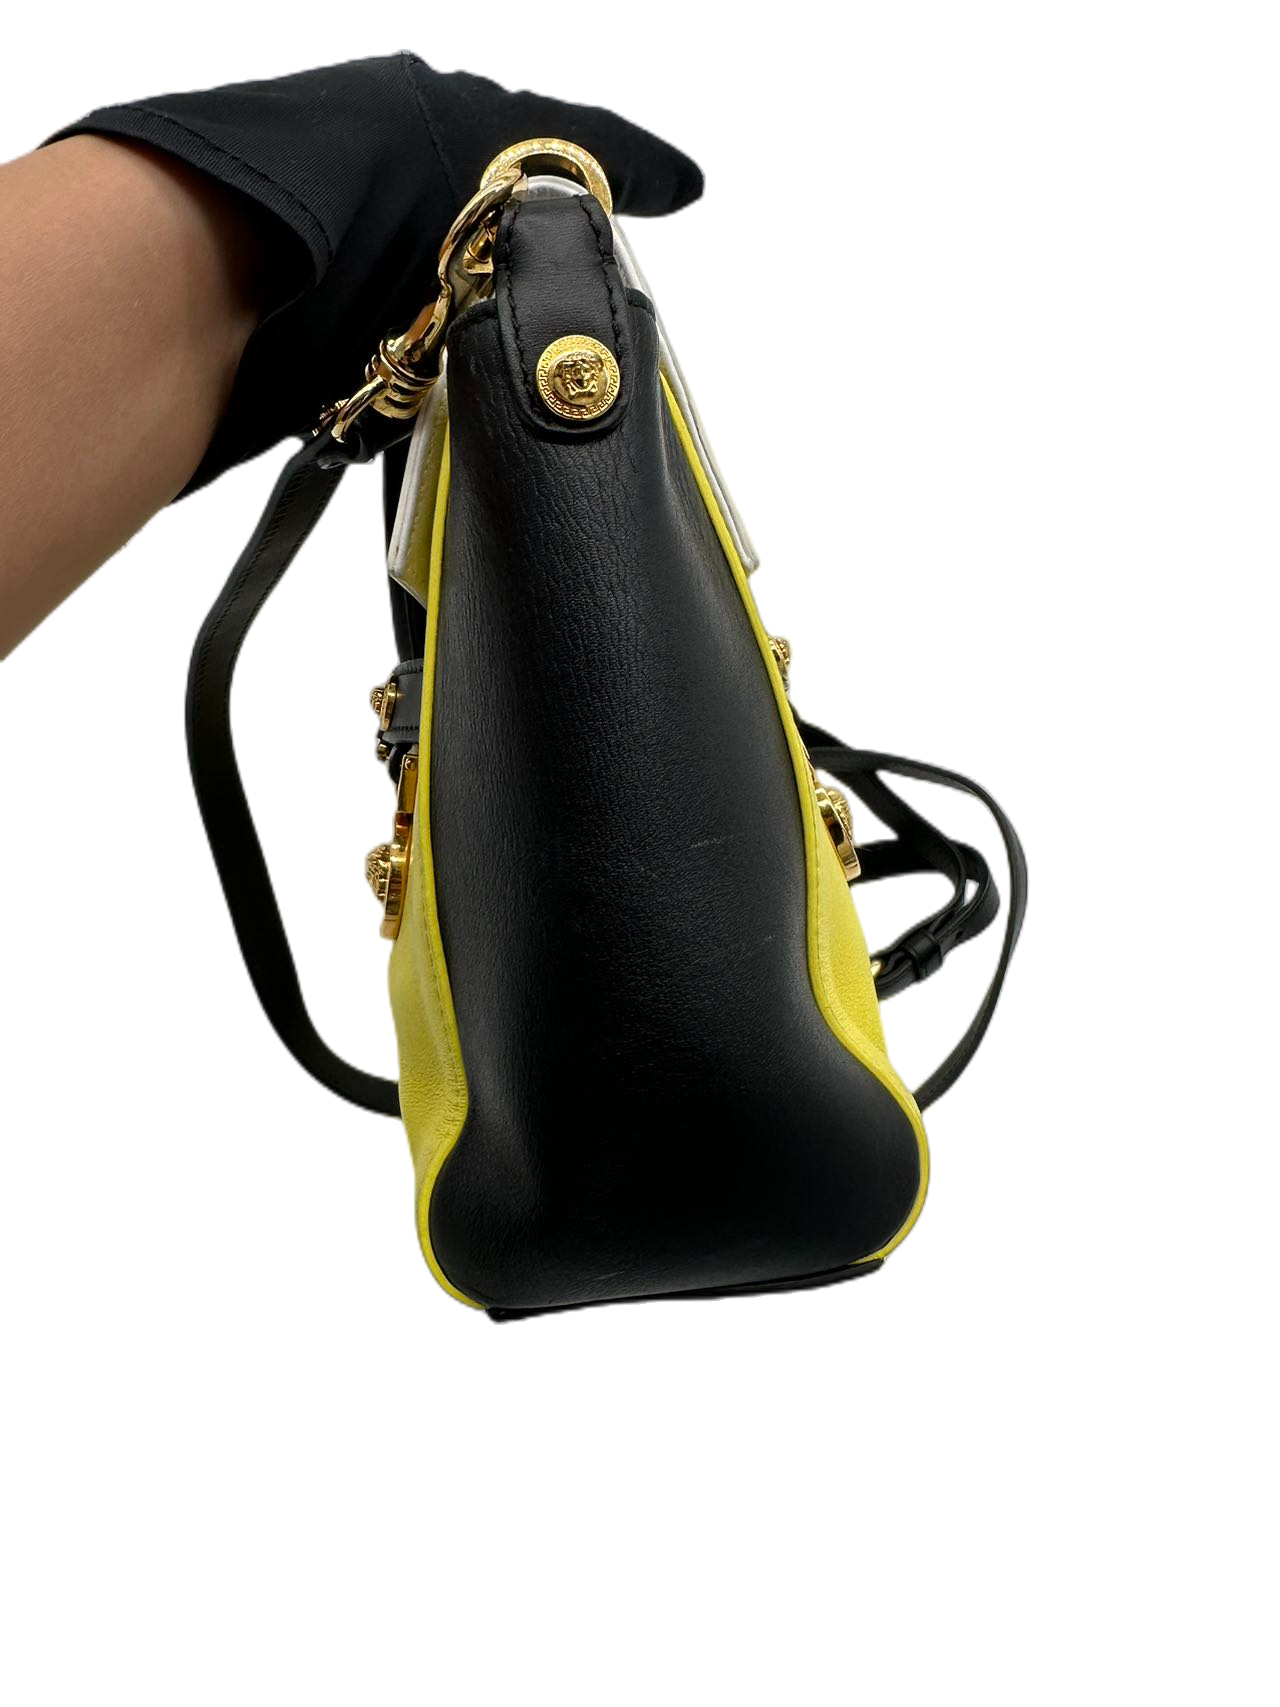 Versace Tri-Color Leather Shoulder Bag Crossbody